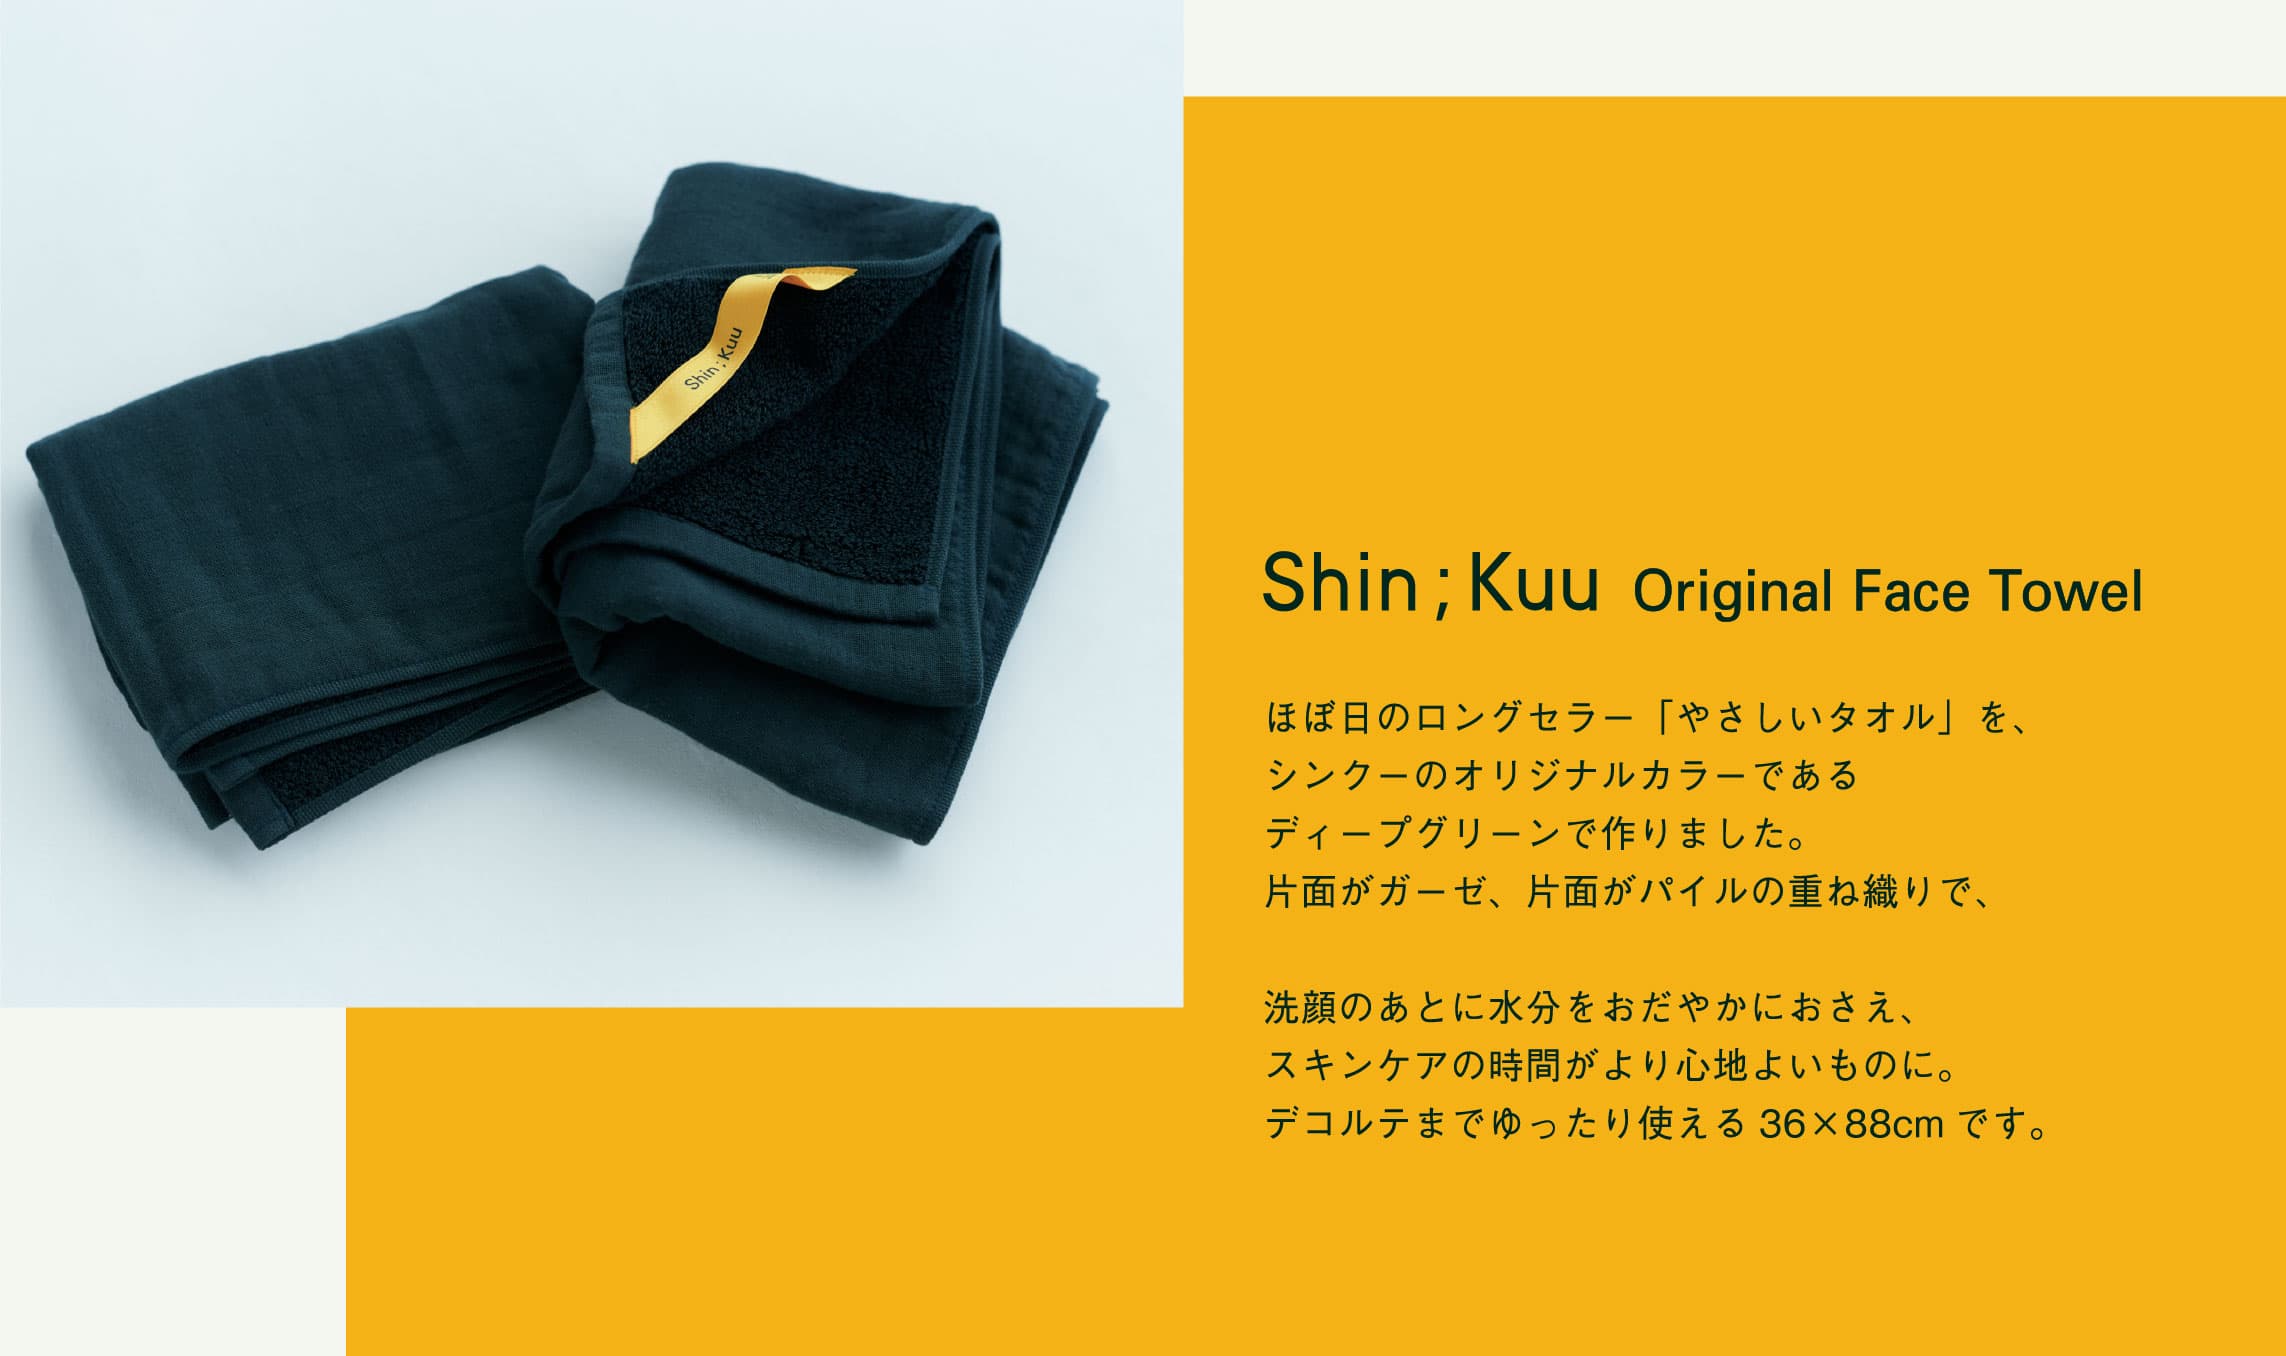 Shin;Kuu Original Face Towel ほぼ日のロングセラー「やさしいタオル」を、シンクーのオリジナルカラーであるディープグリーンで作りました。片面がガーゼ、片面がパイルの重ね織りで、洗顔のあとに水分をおだやかにおさえ、スキンケアの時間がより心地よいものに。デコルテまでゆったり使える36×88cmです。